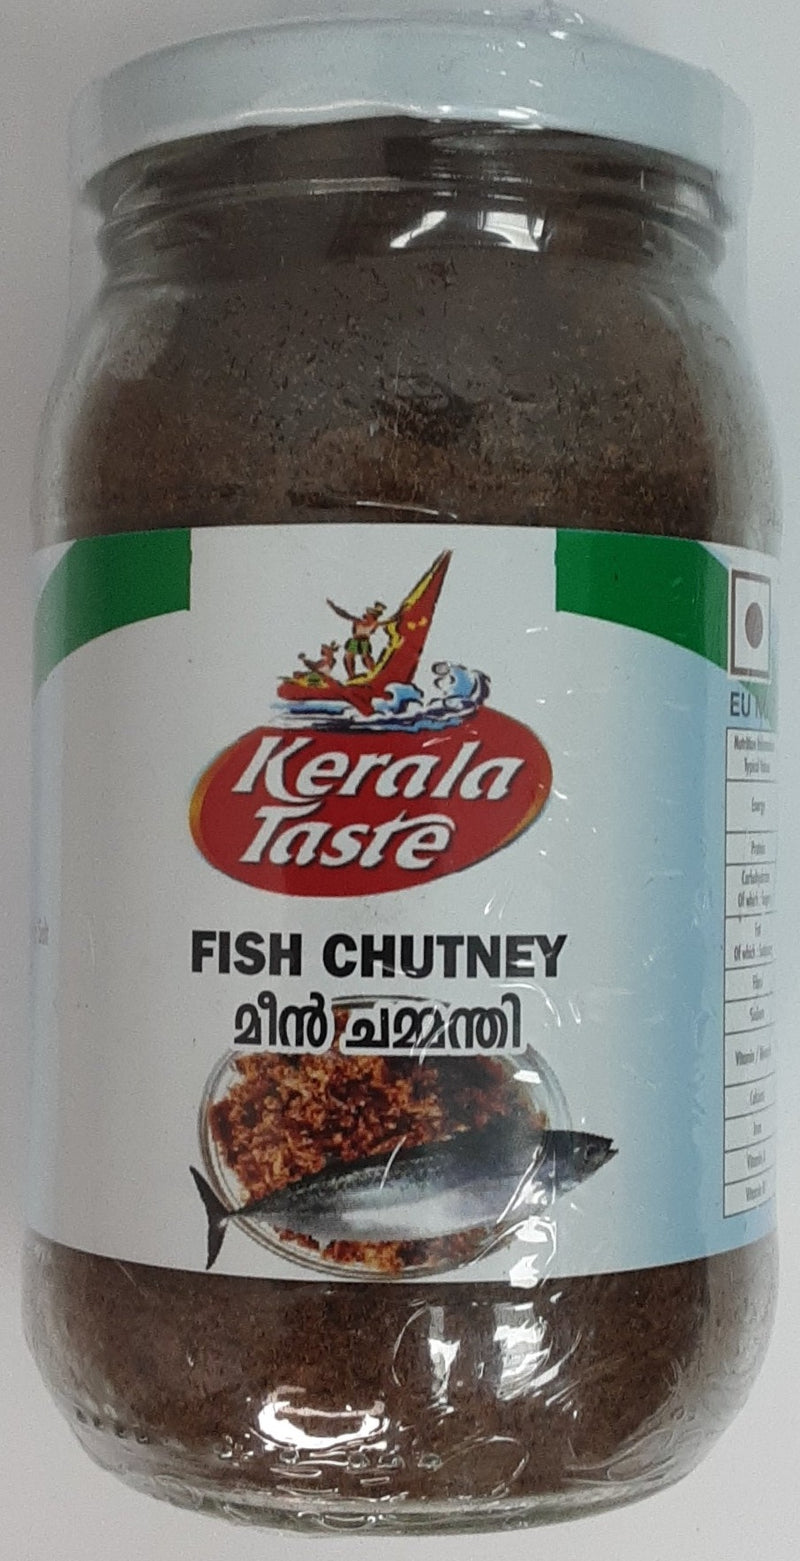 Kerala Taste Fish Chutney 200g